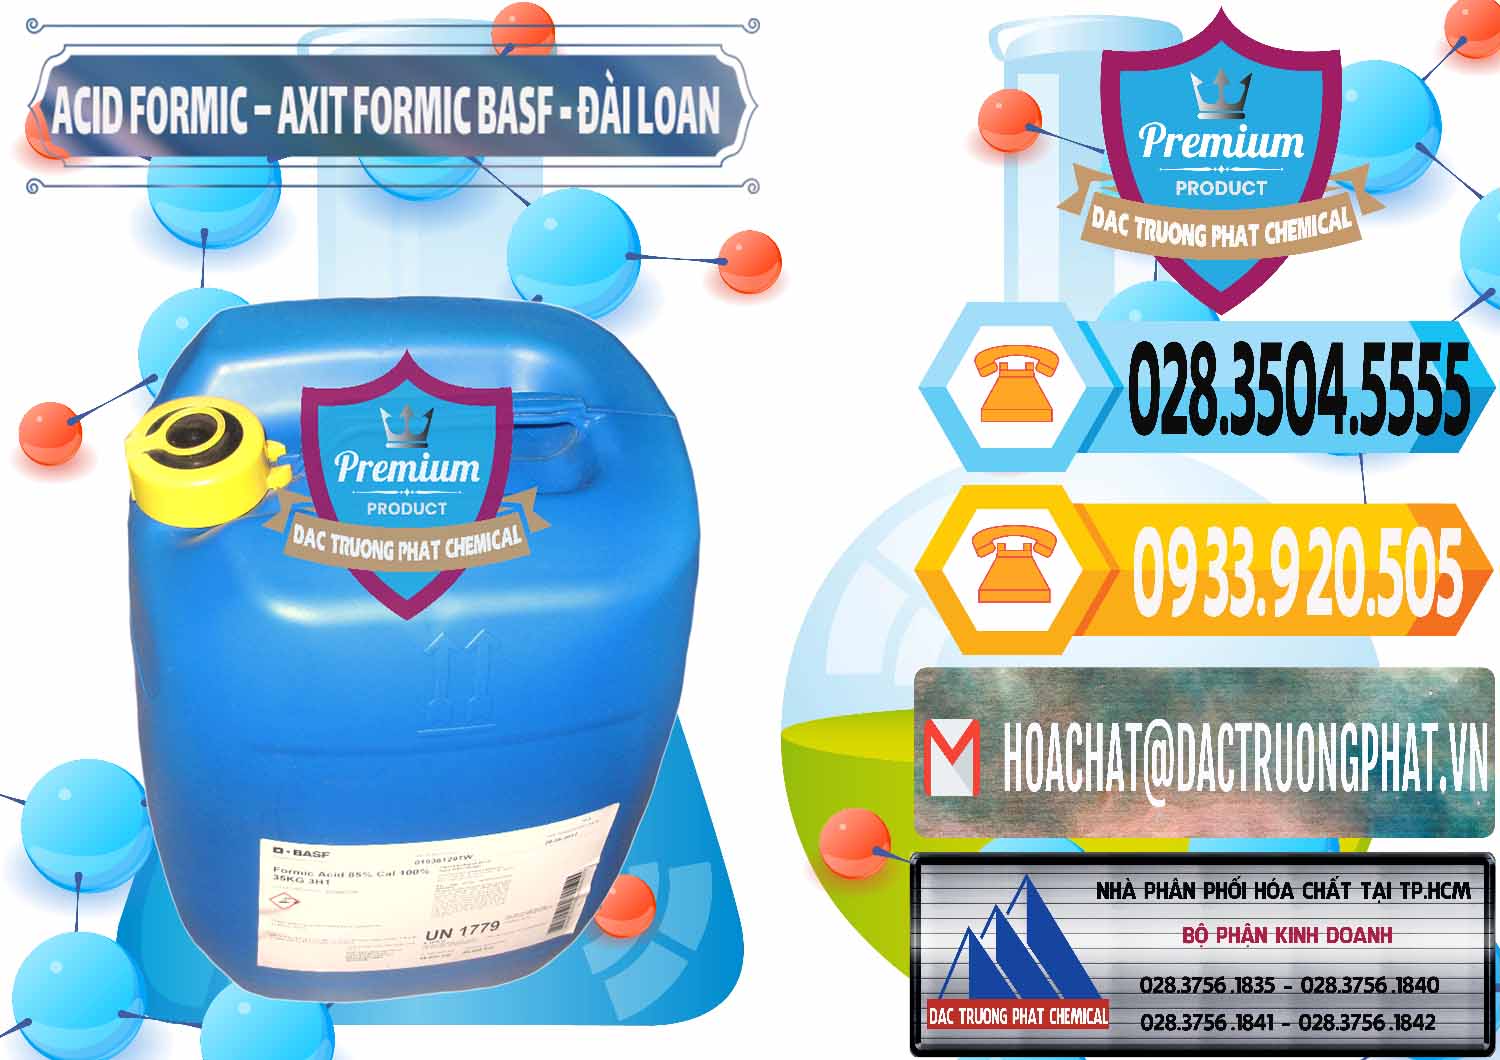 Nơi chuyên cung cấp & bán Acid Formic - Axit Formic 85% BASF Đài Loan Taiwan - 0027 - Cty cung cấp ( phân phối ) hóa chất tại TP.HCM - hoachattayrua.net